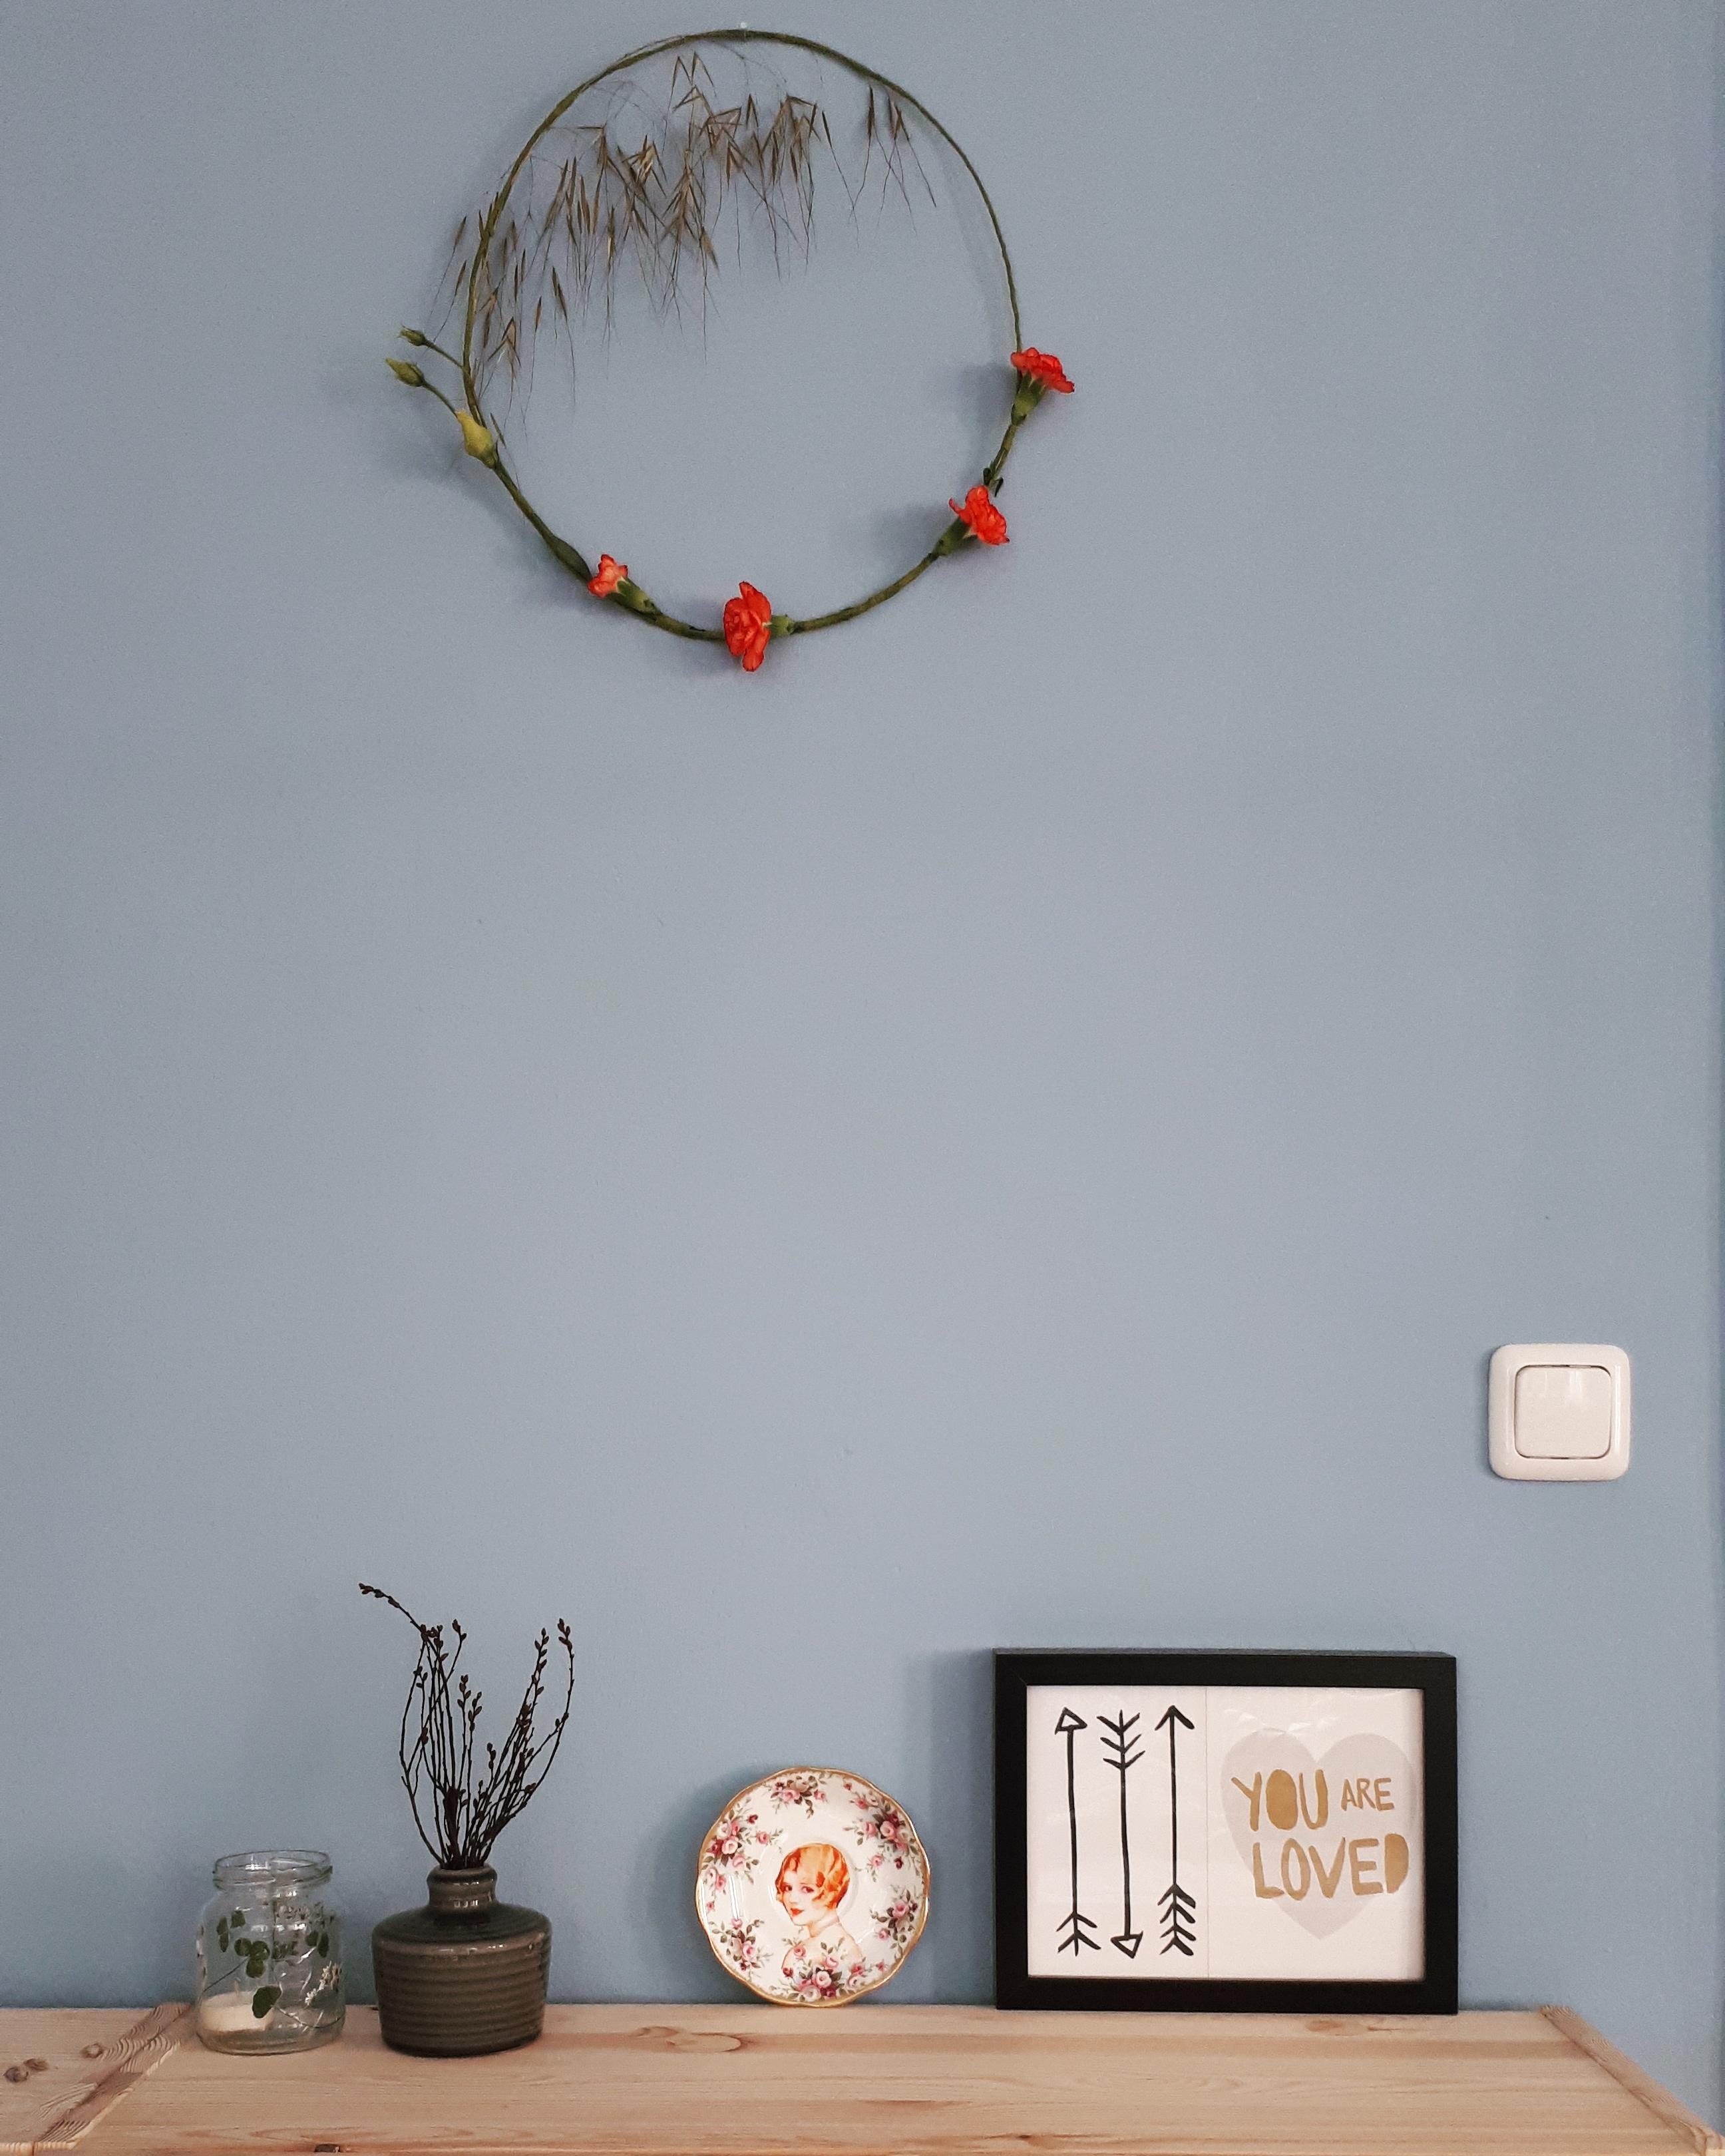 #Wohnzimmer #blaueWand #Kranz #Sideboard #Ikea #Ivar #Altbau #Altbauliebe #DIY #Kranz #Kranzliebe 